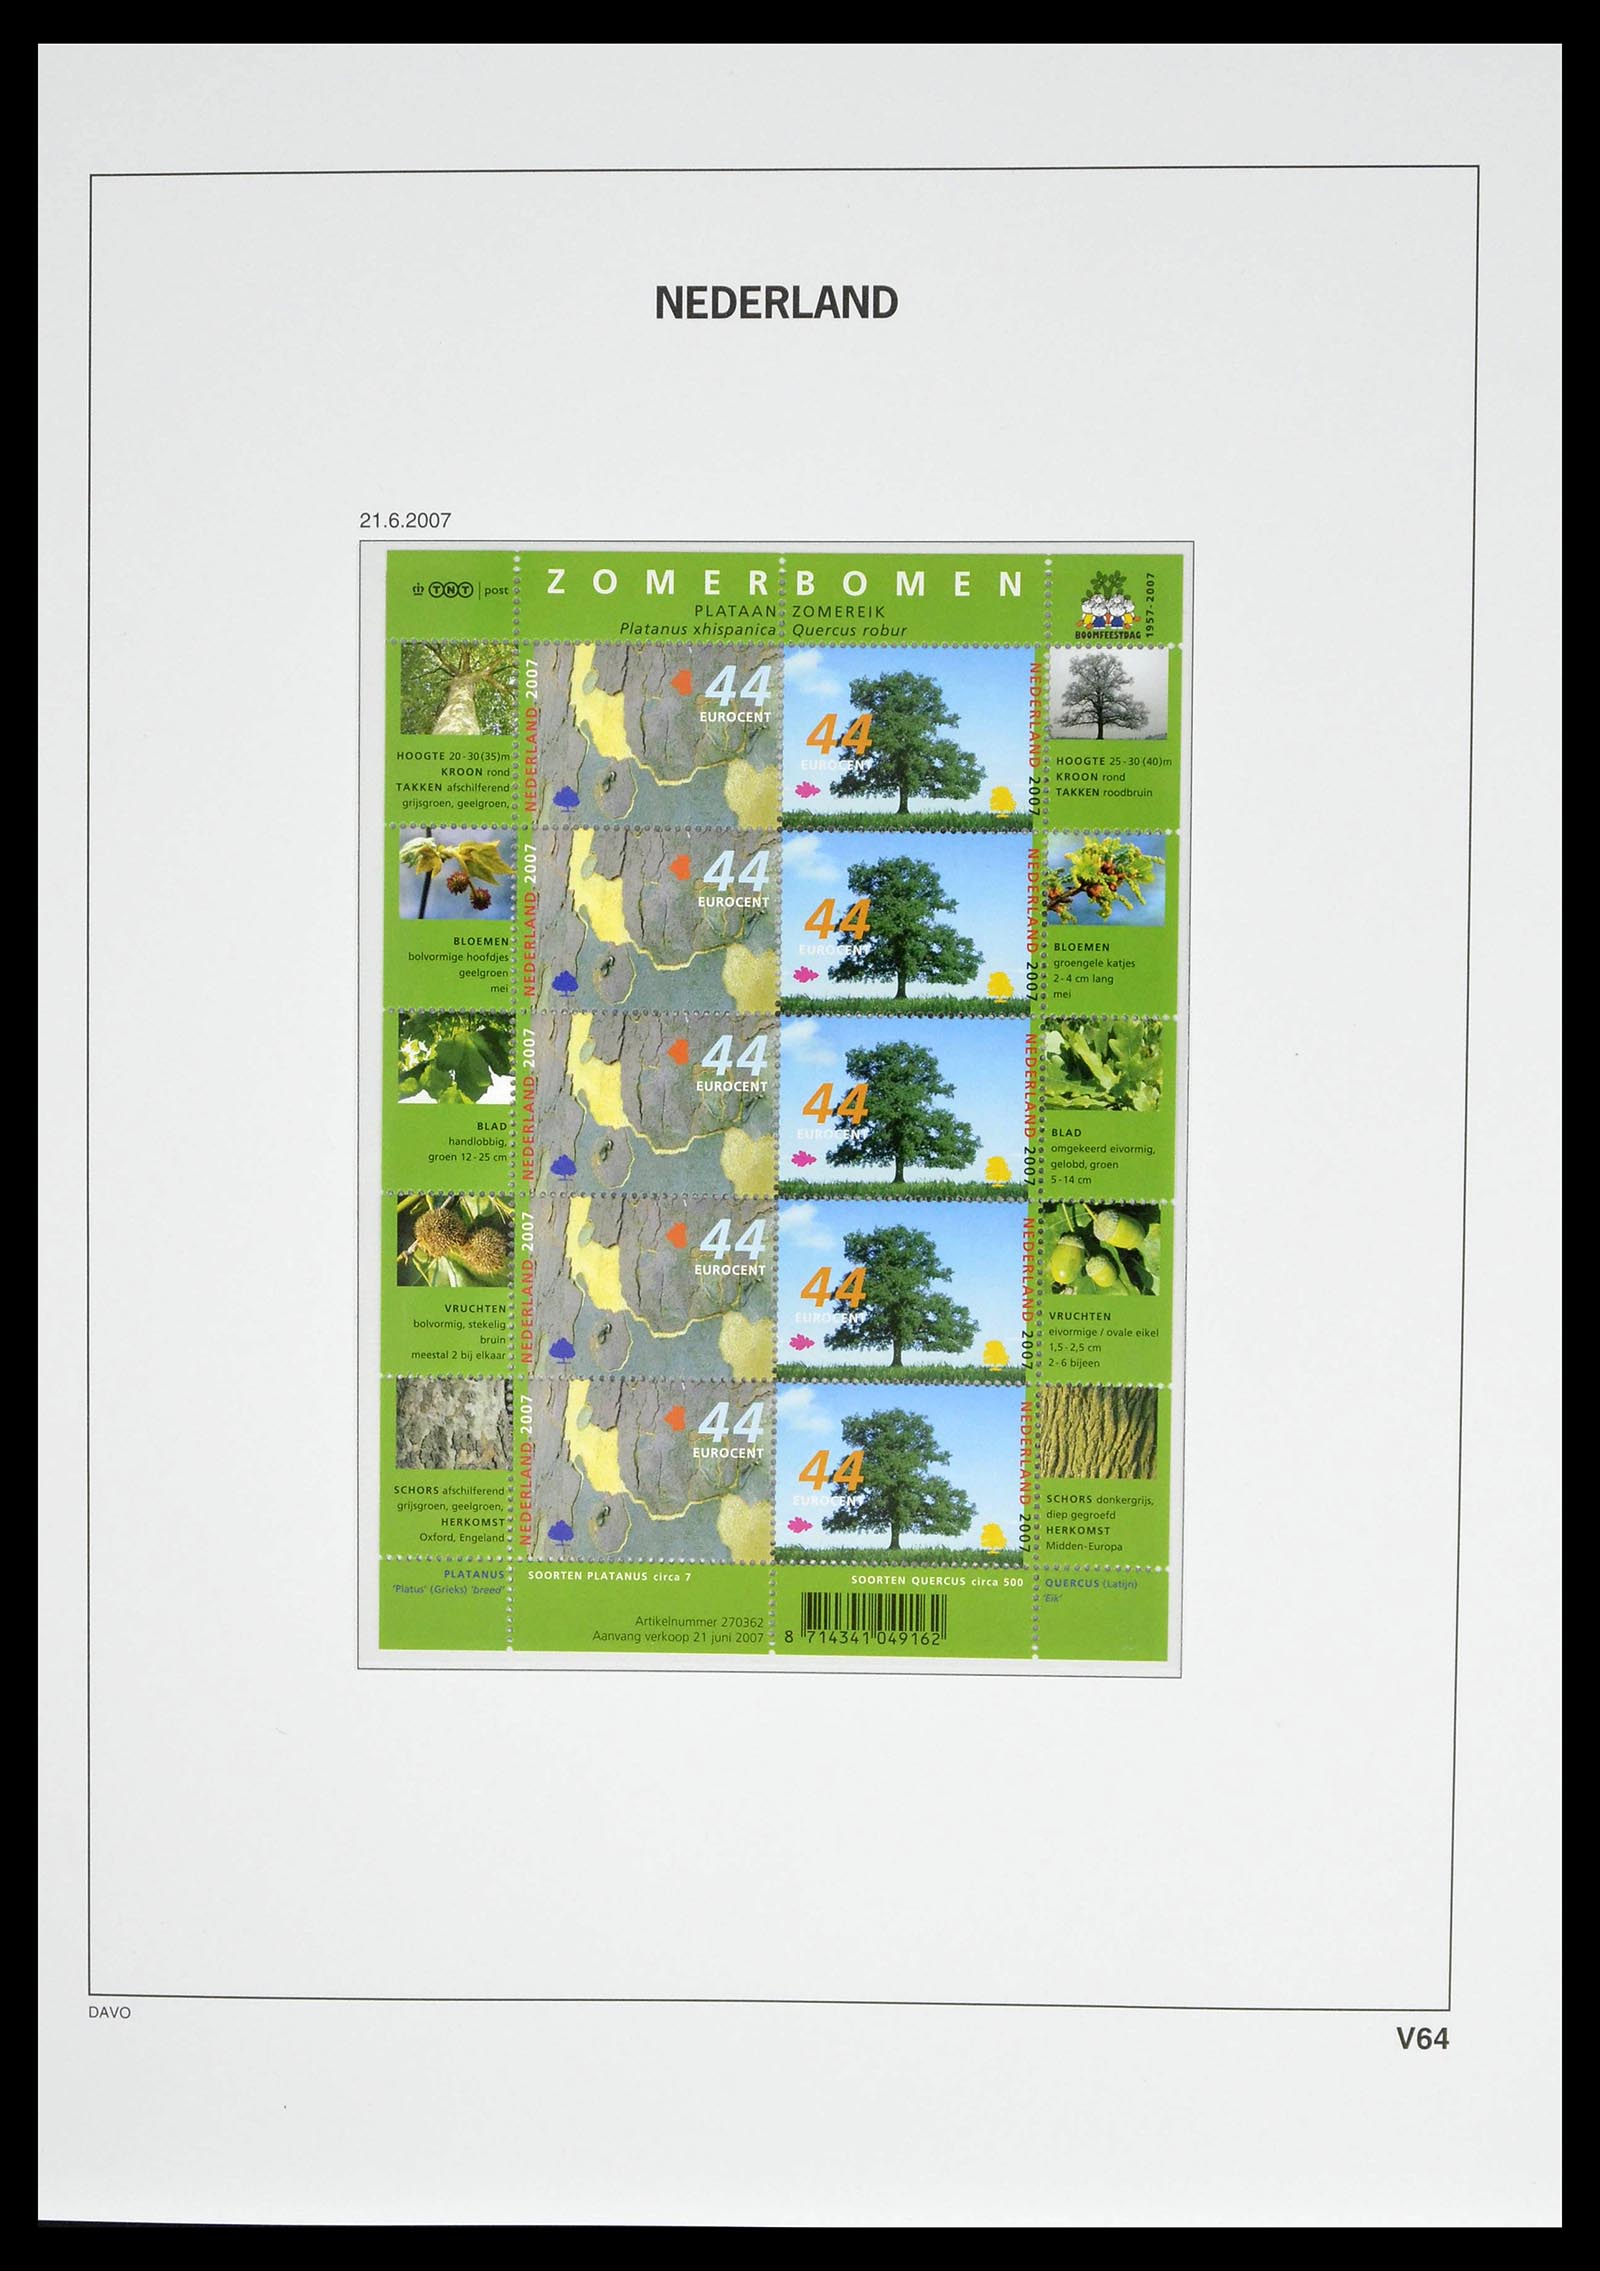 39134 0078 - Stamp collection 39134 Netherlands sheetlets 1992-2019!